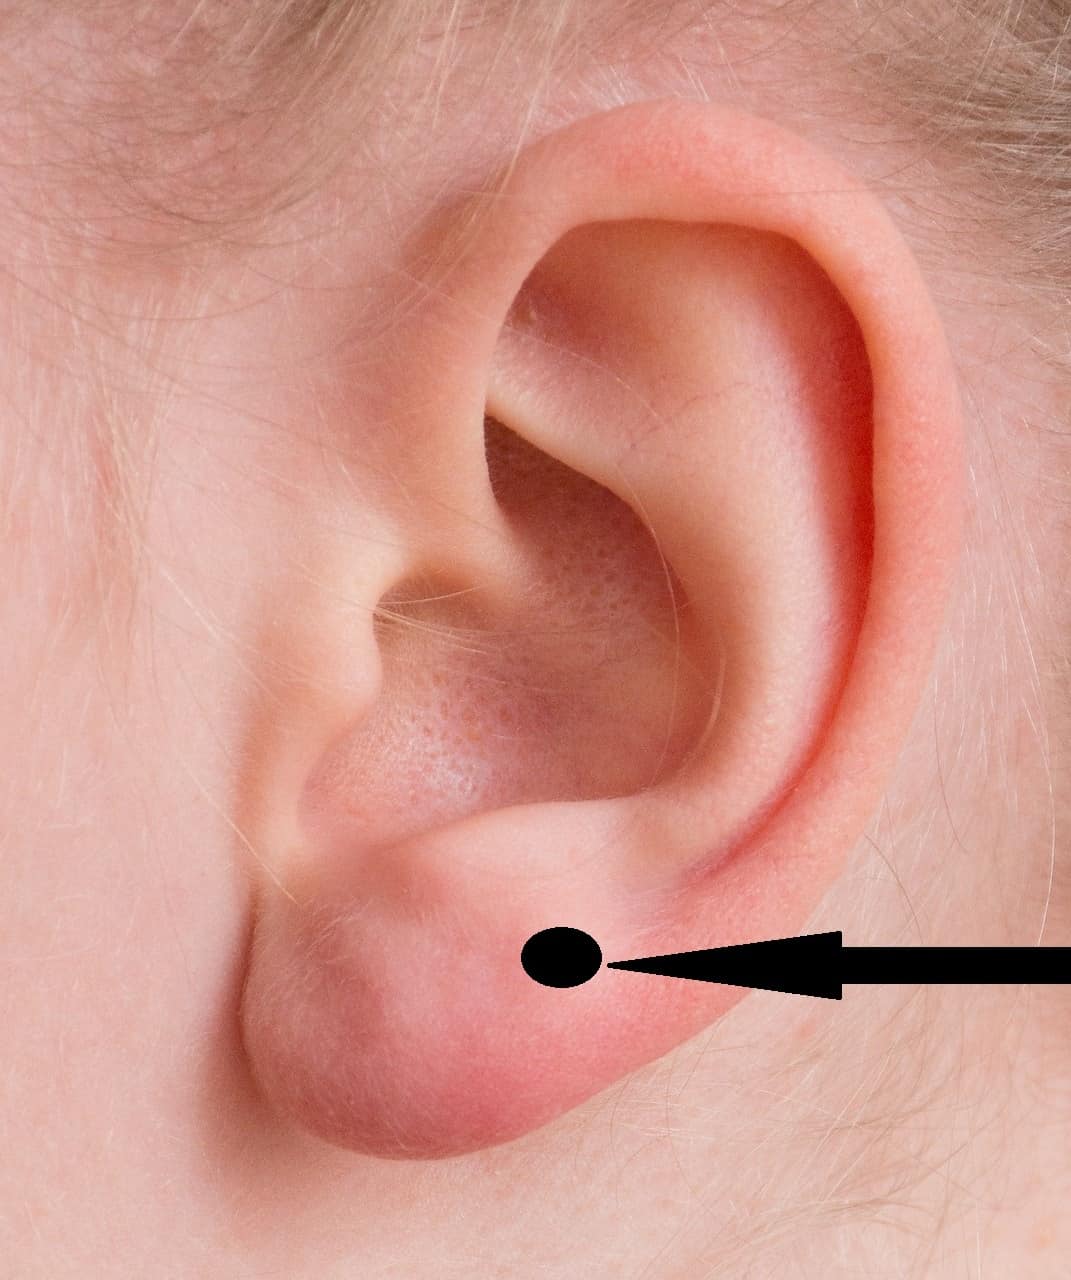 upper lobe piercing guide